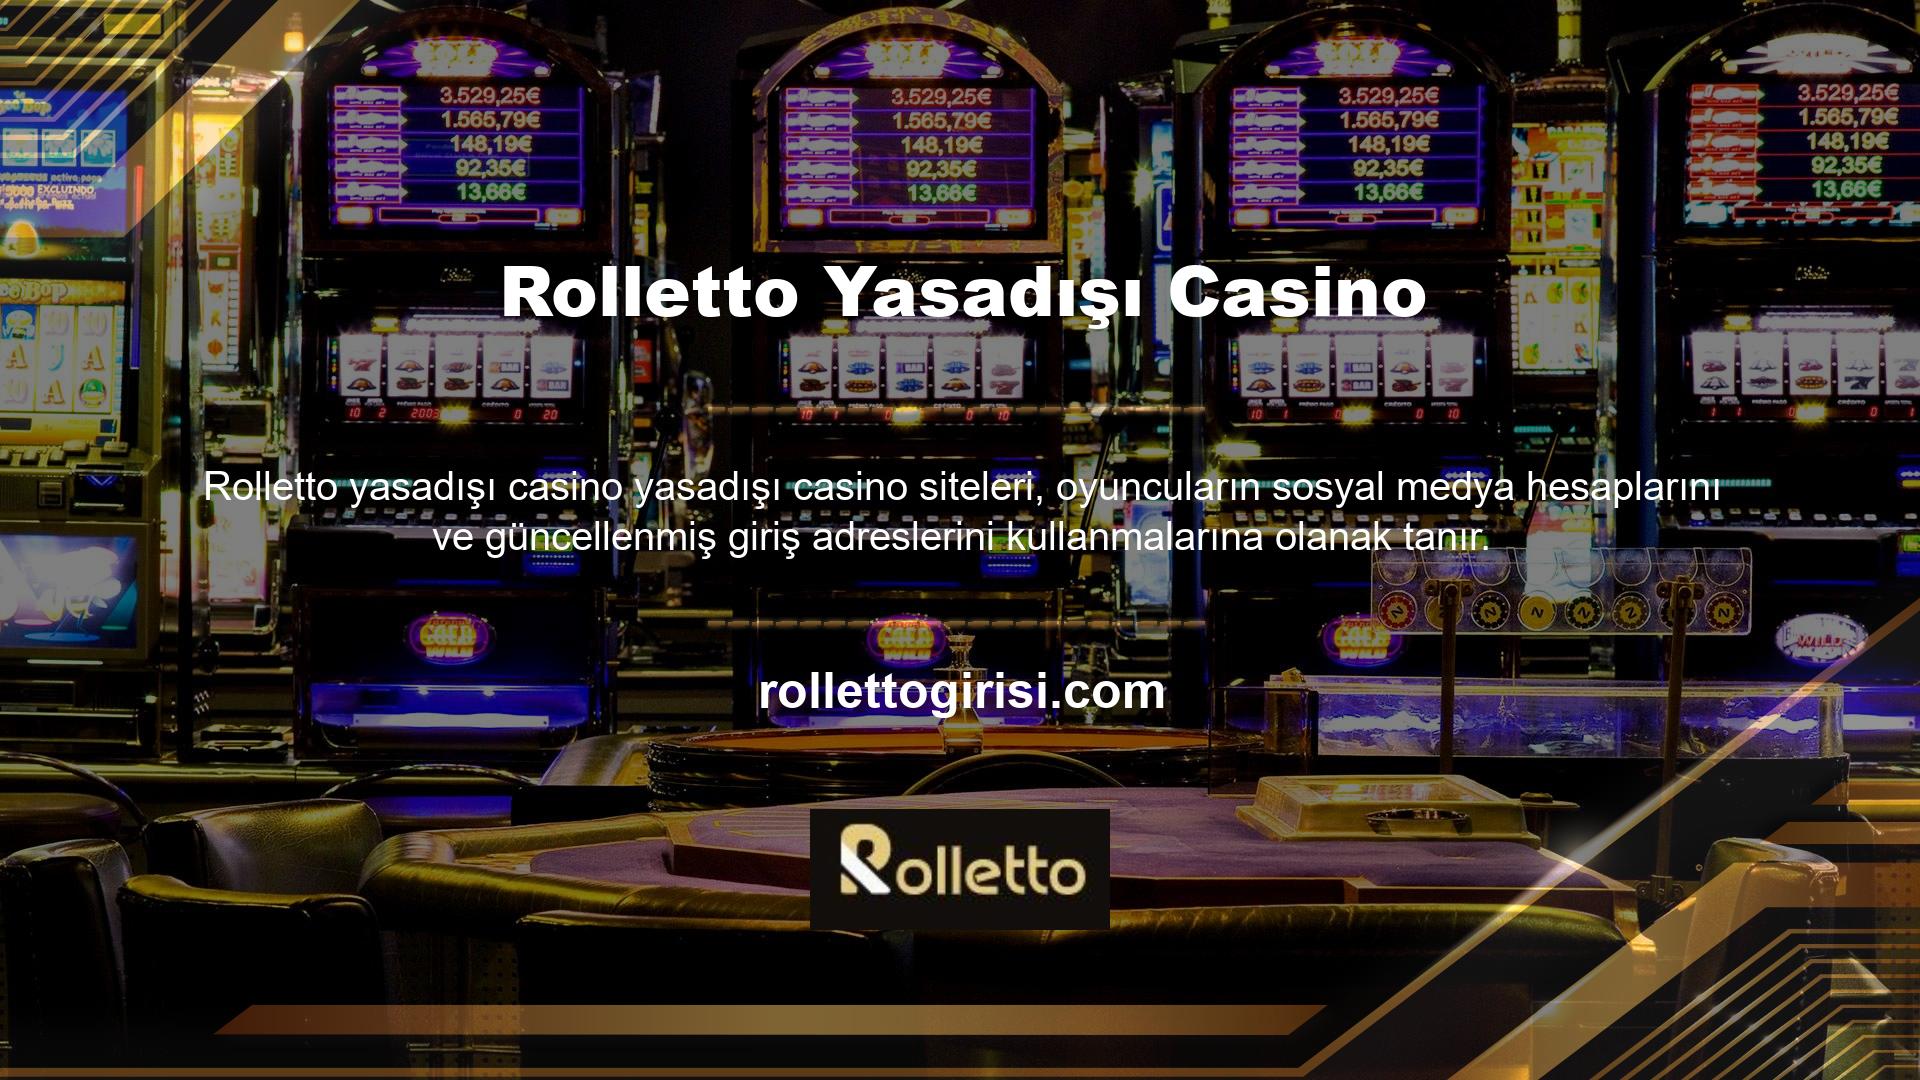 Nasıl? Rolletto adresini değiştirdi mi? Canlı casino sitesinin mevcut giriş bilgisinde değişiklikler yapıldı